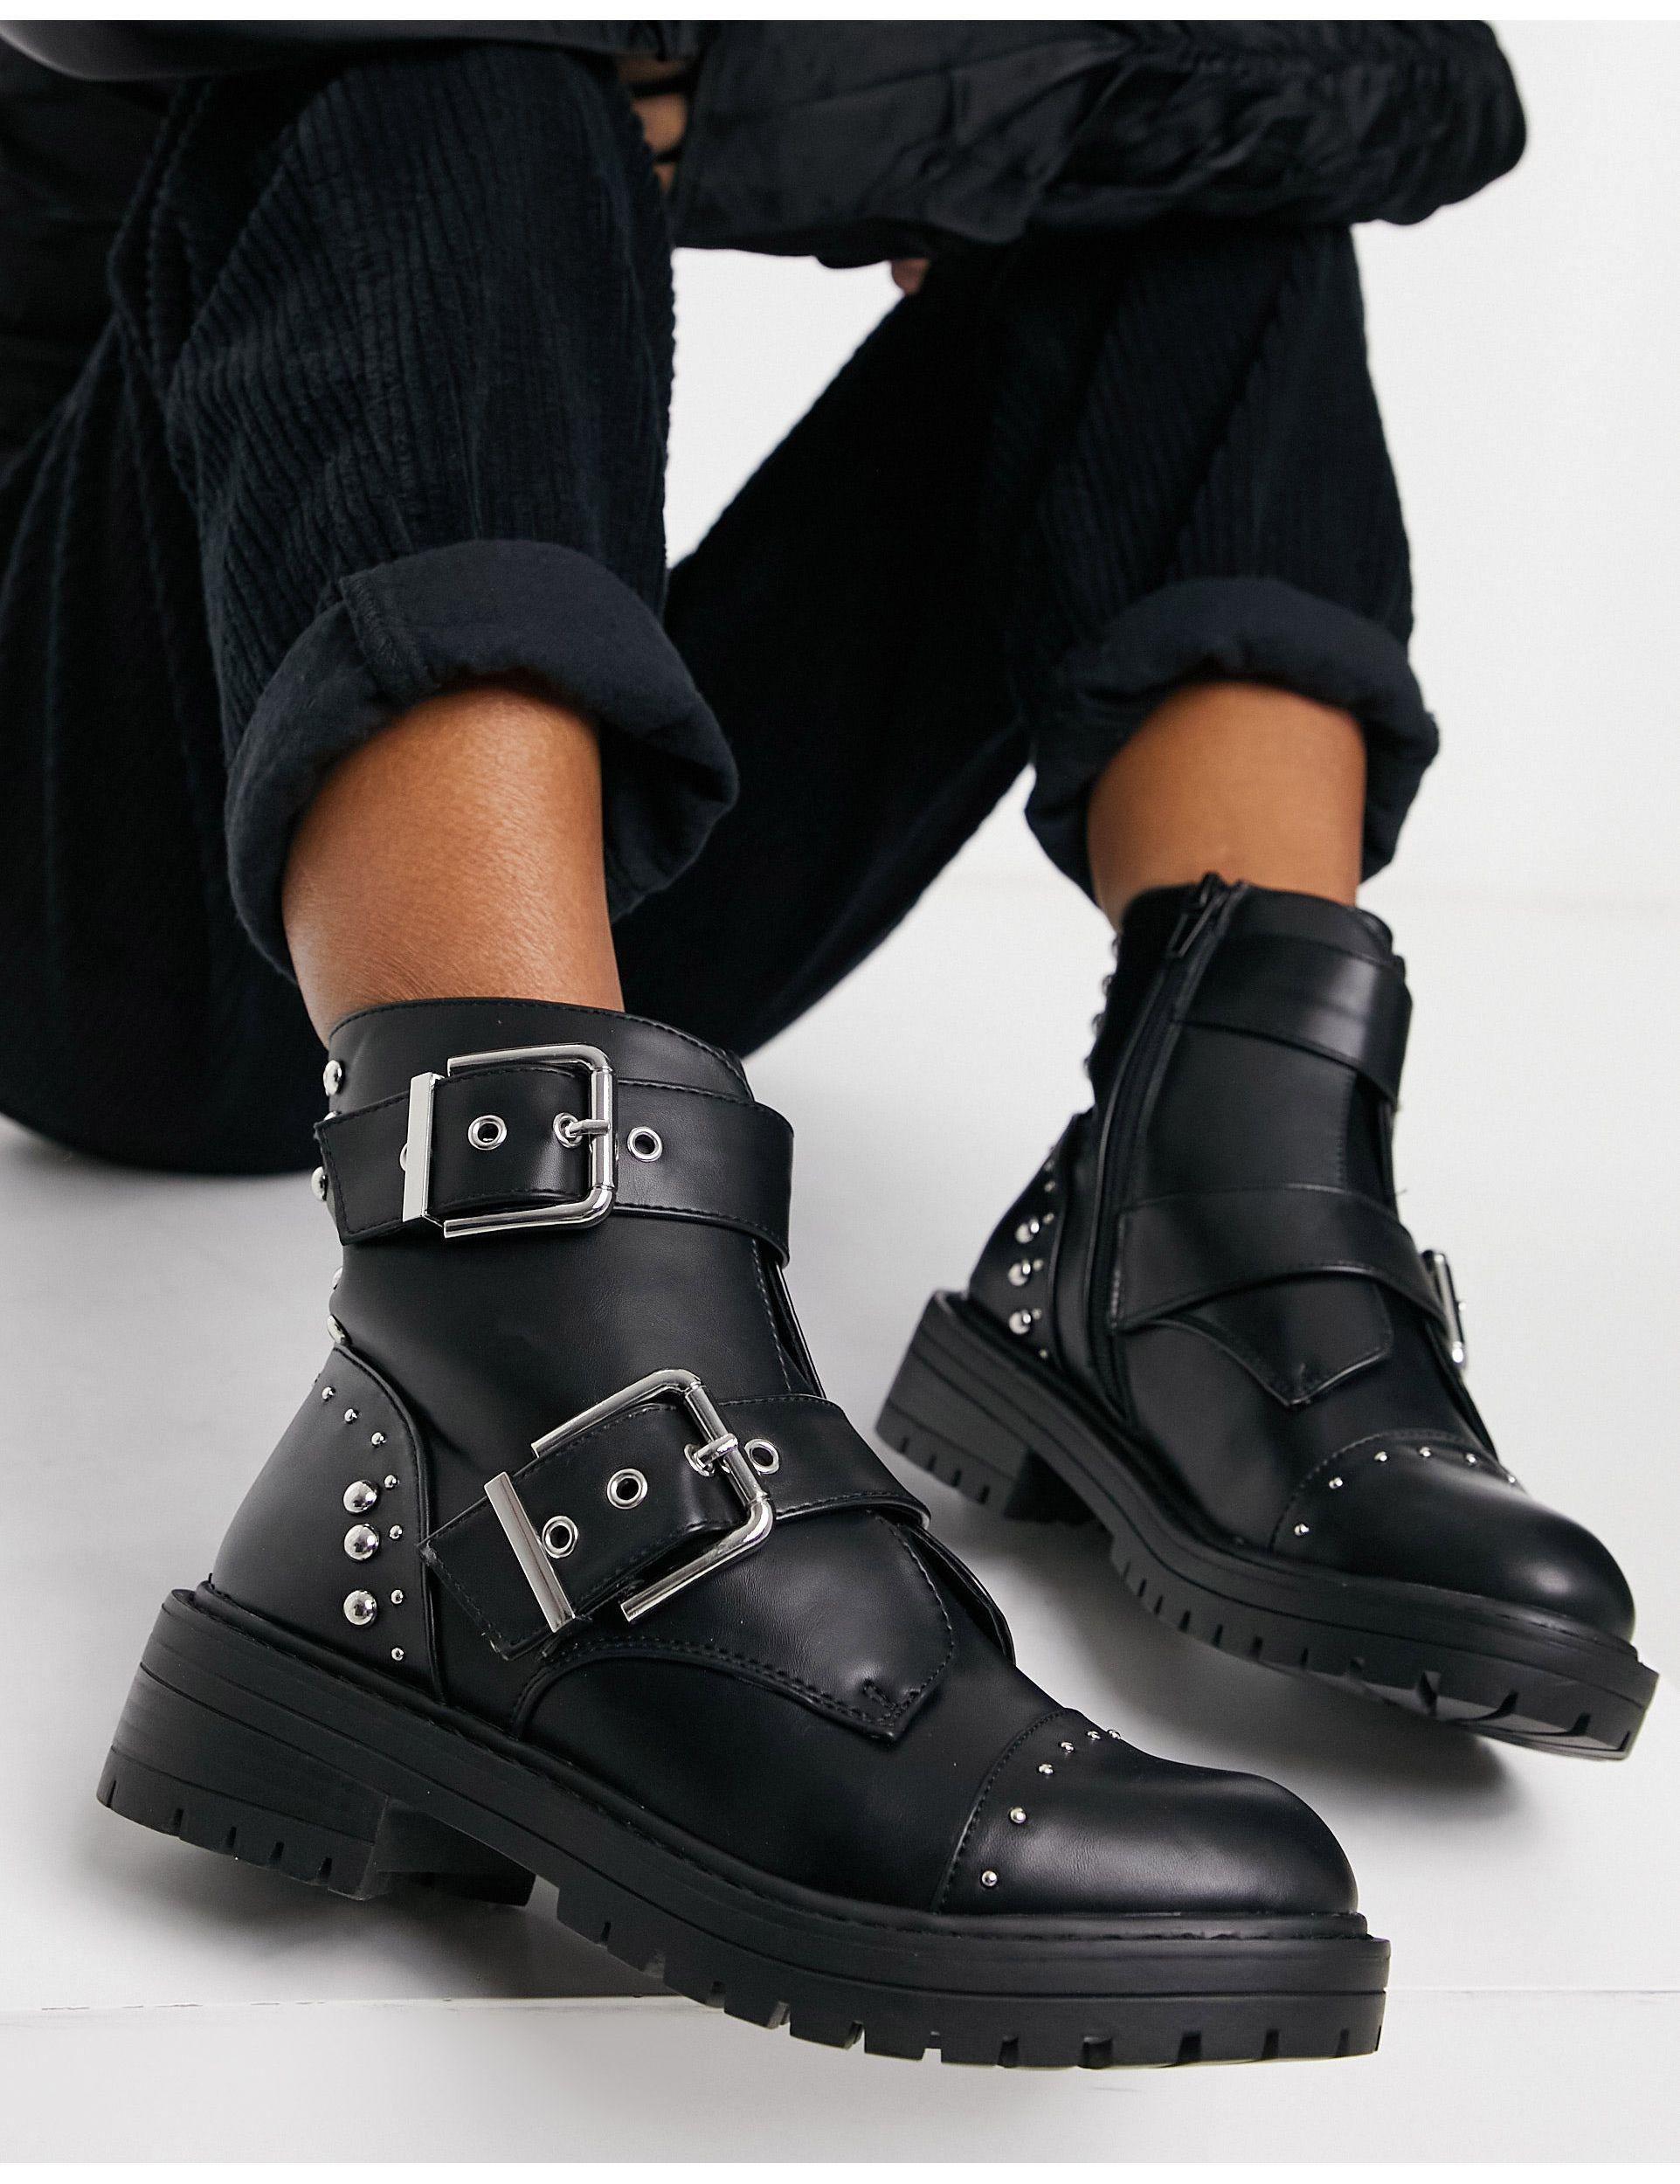 Mujer Zapatos de Botas de Botines Botines con detalle de hebilla DKNY de Cuero de color Negro 